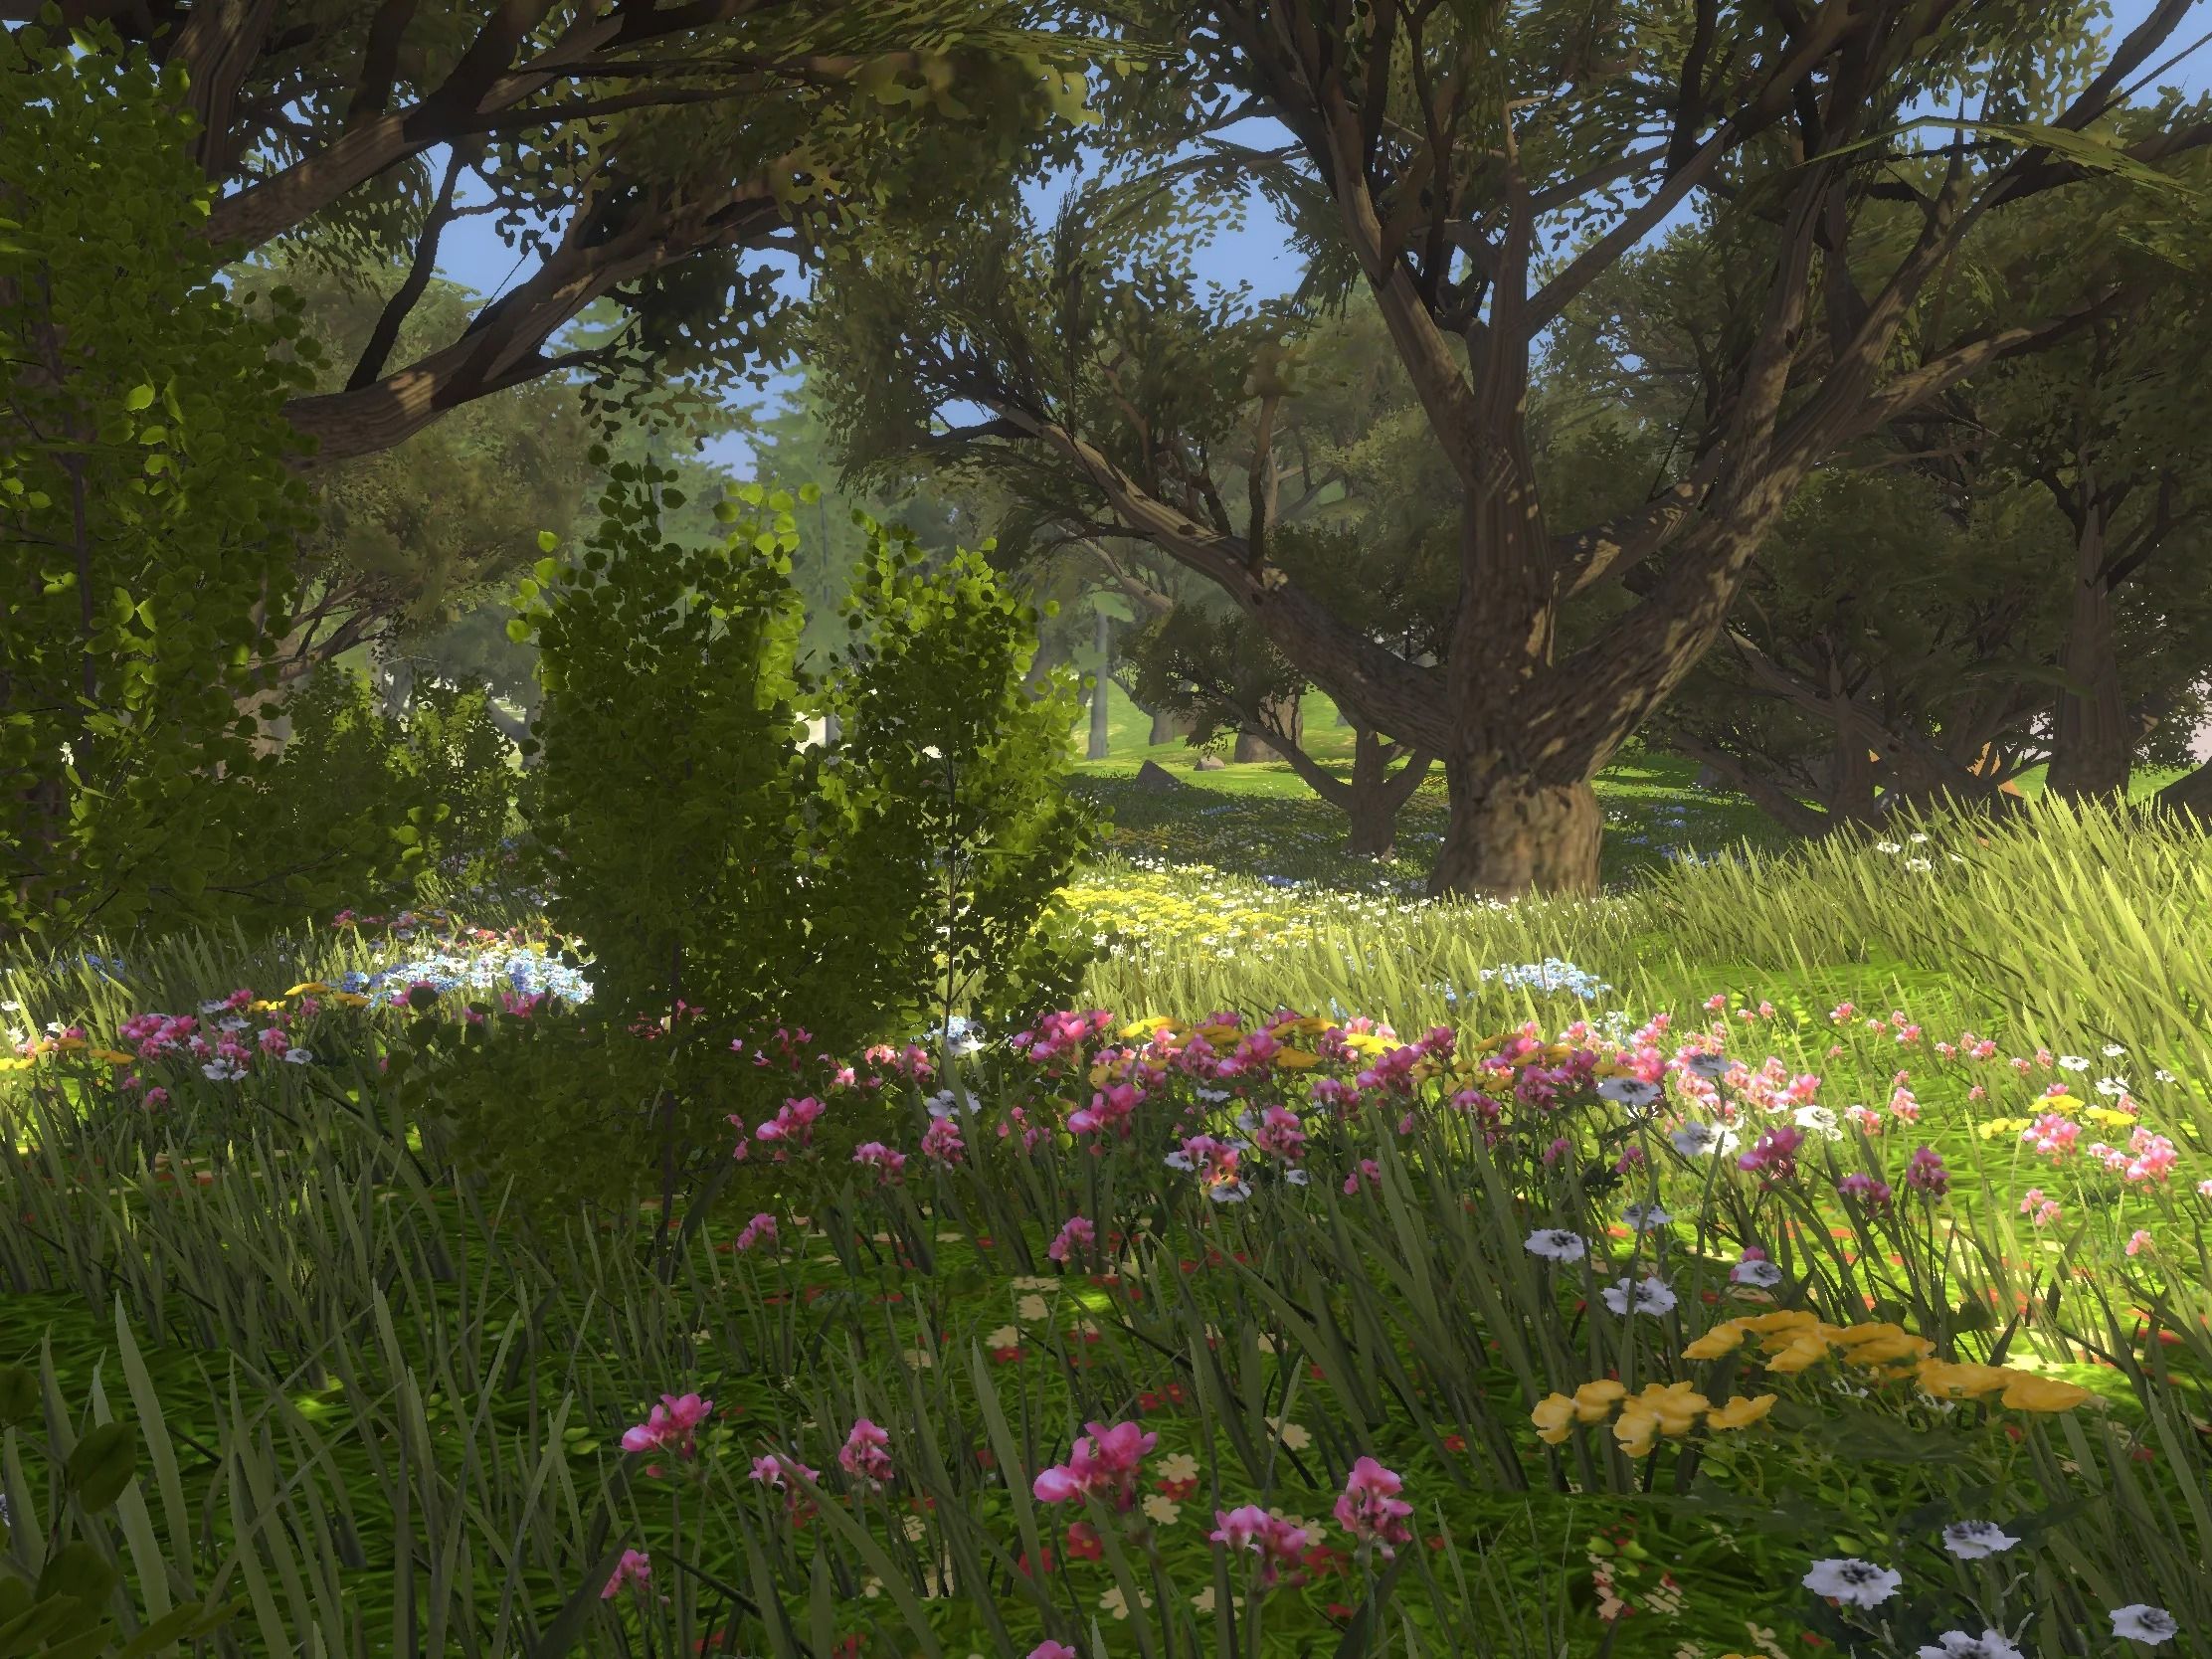 captura de tela ambiental sem natureza selvagem mostrando grama alta com flores, arbustos e árvores rosa, brancas e amarelas